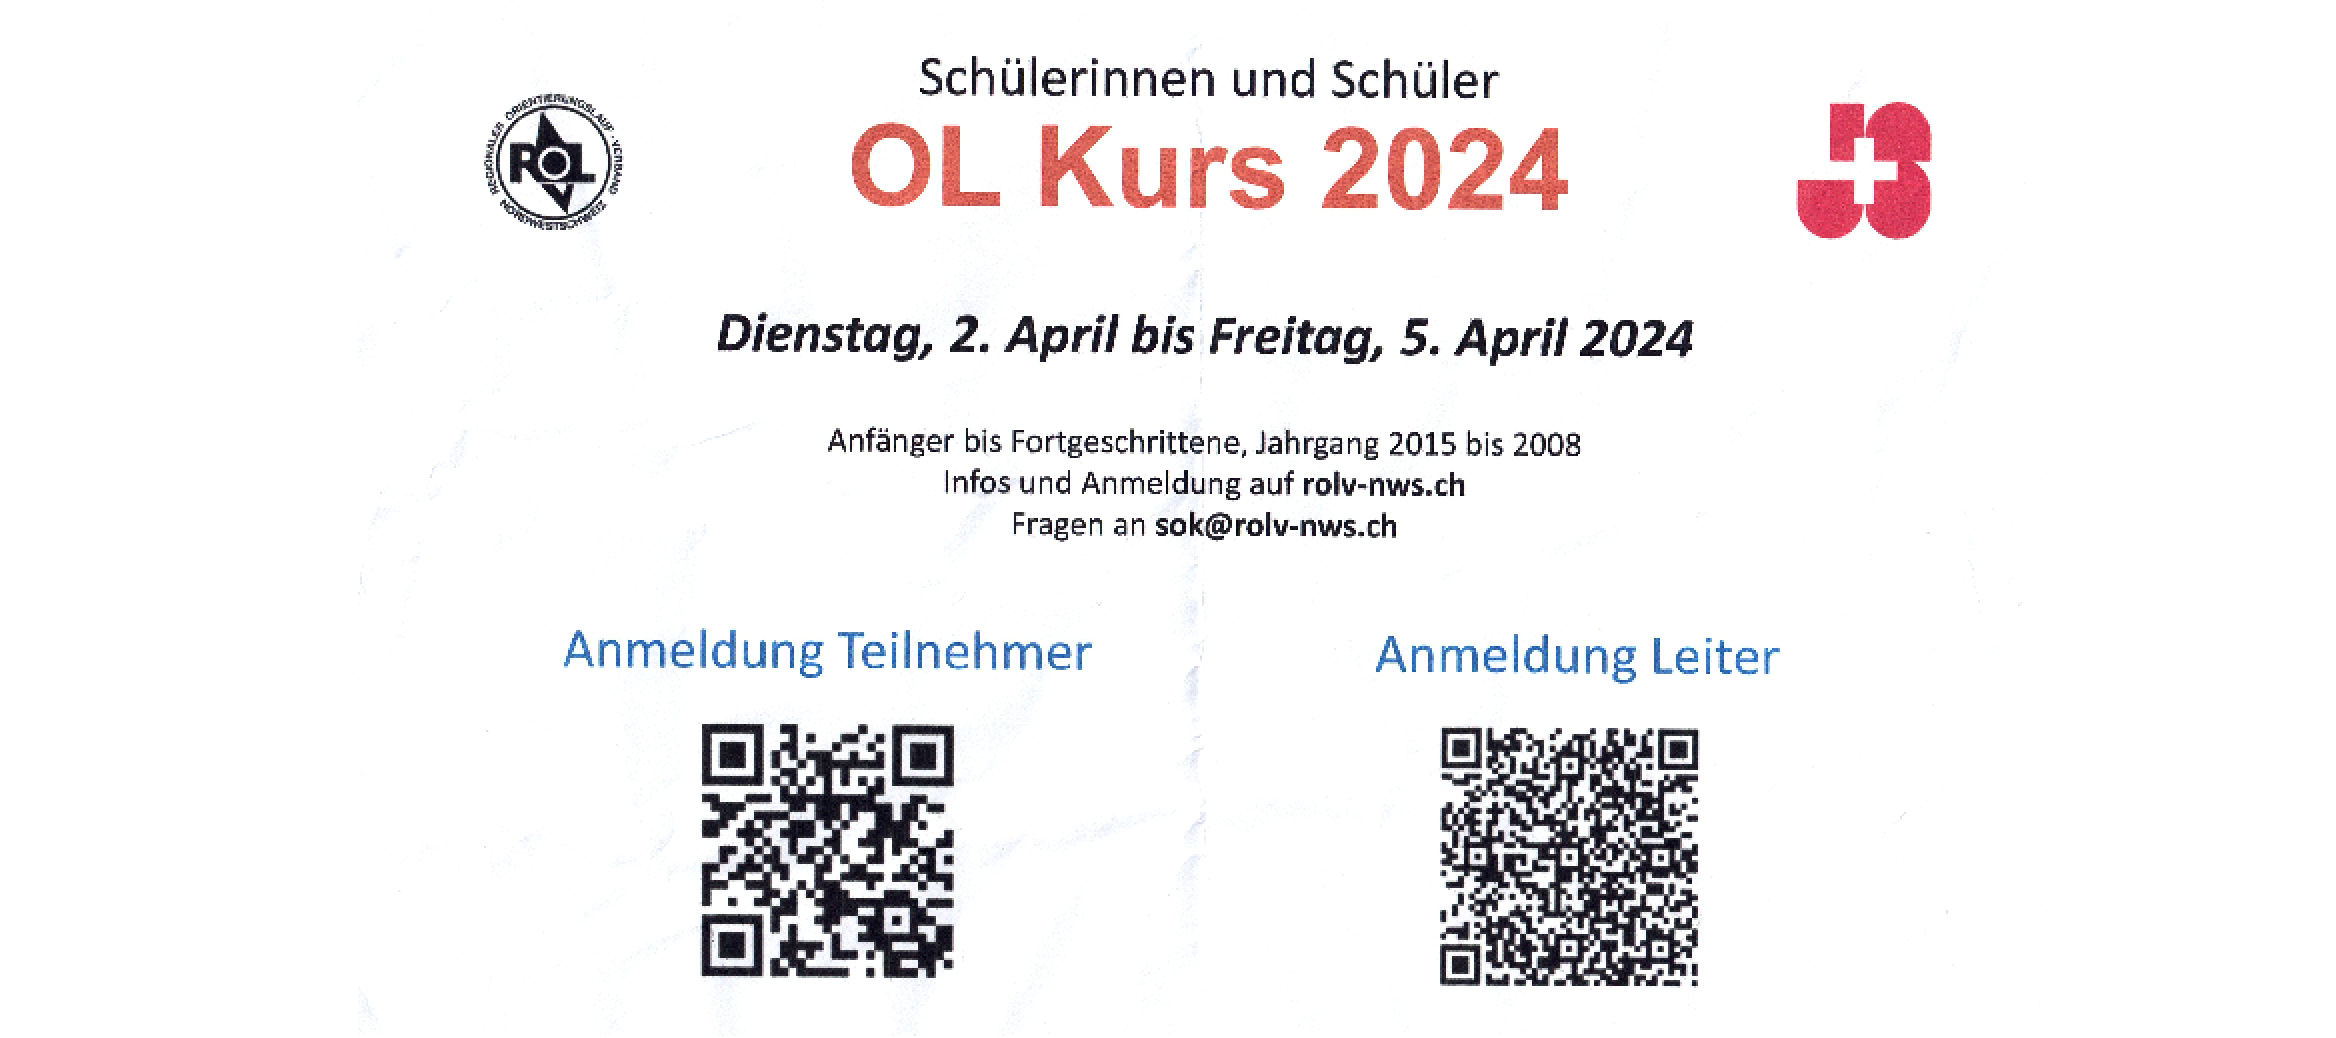 Schülerinnen und Schüler OL-Kurs: 2.-5. April 2024